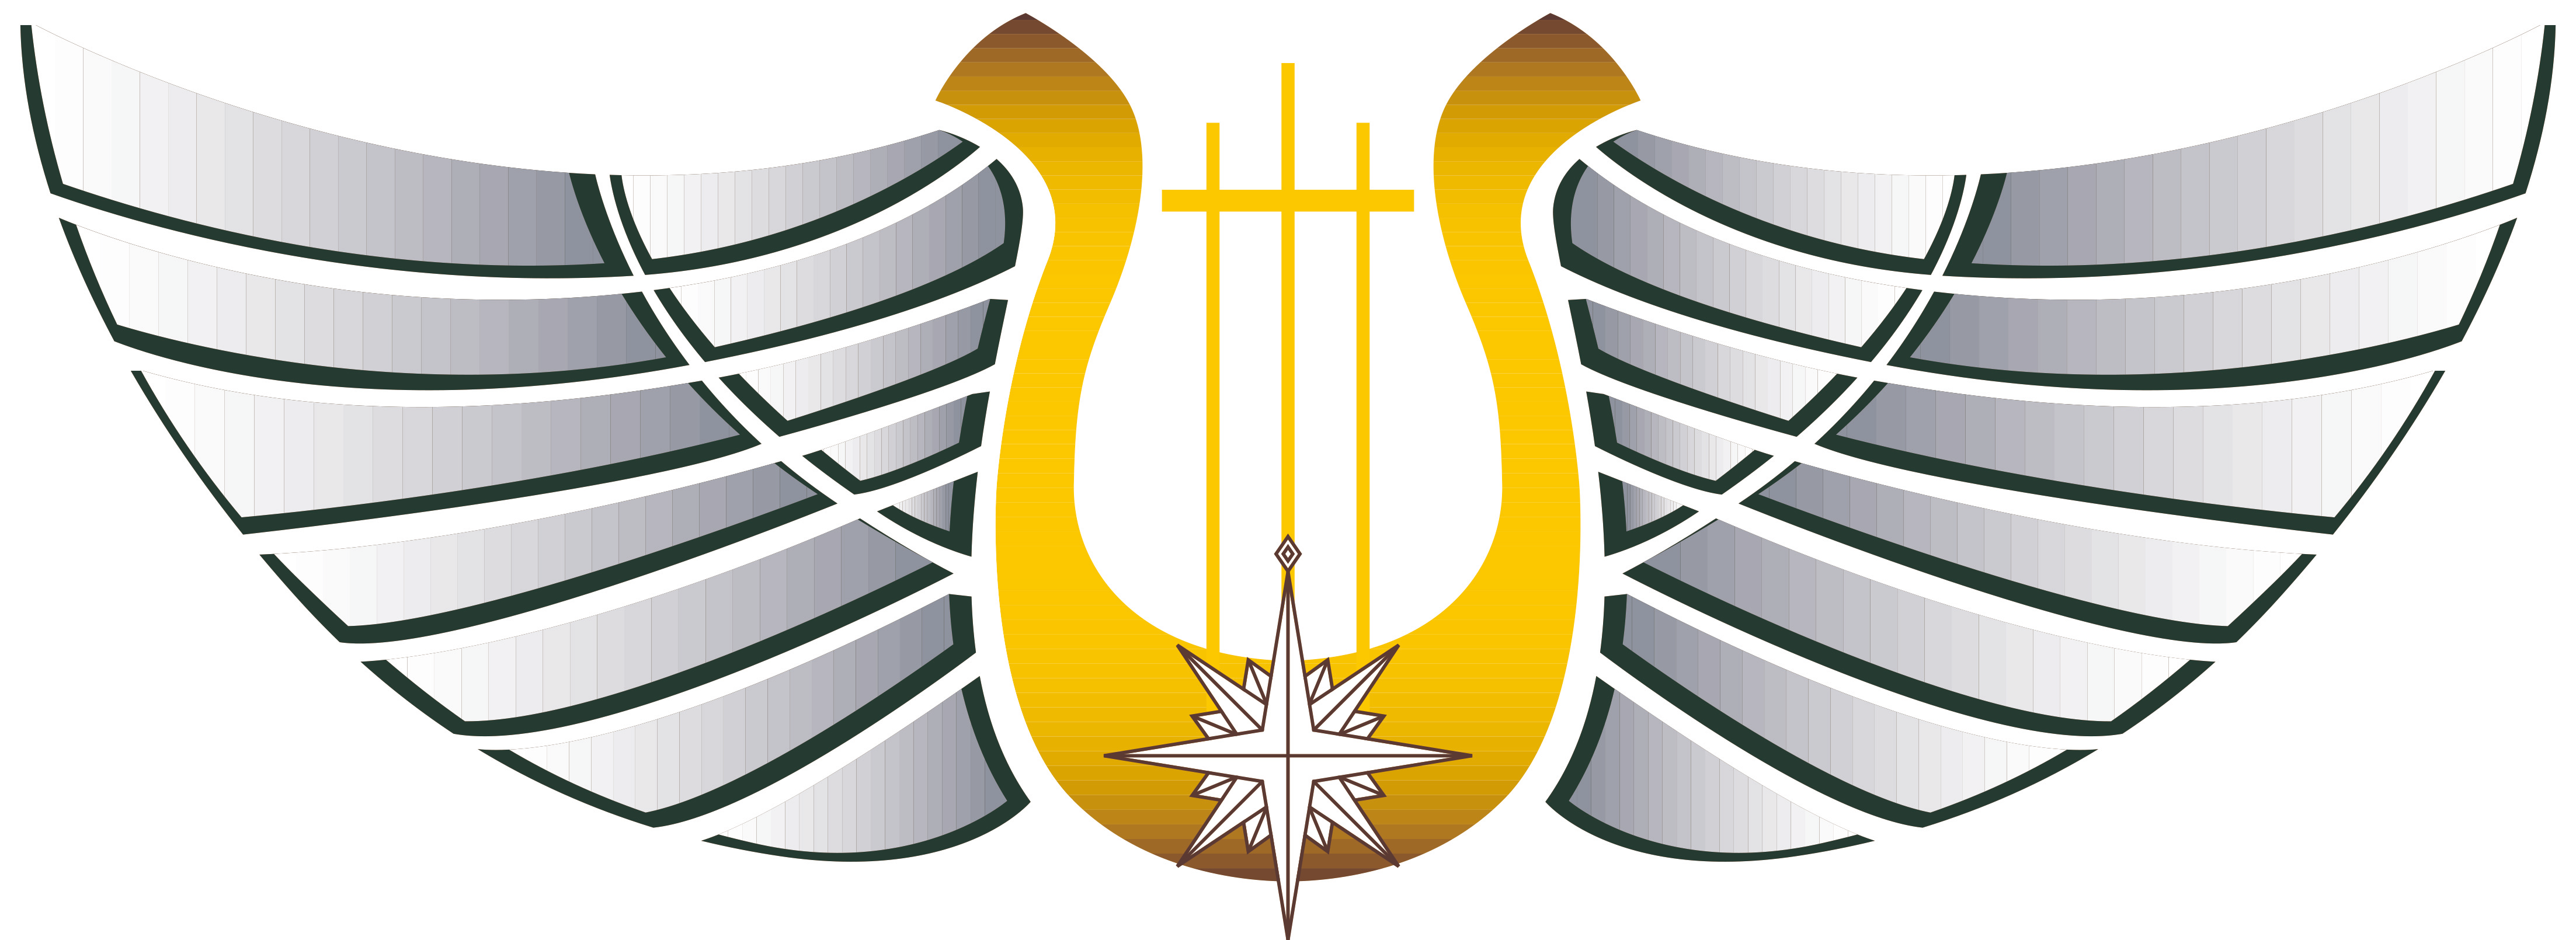 海上保安庁音楽隊職員徽章